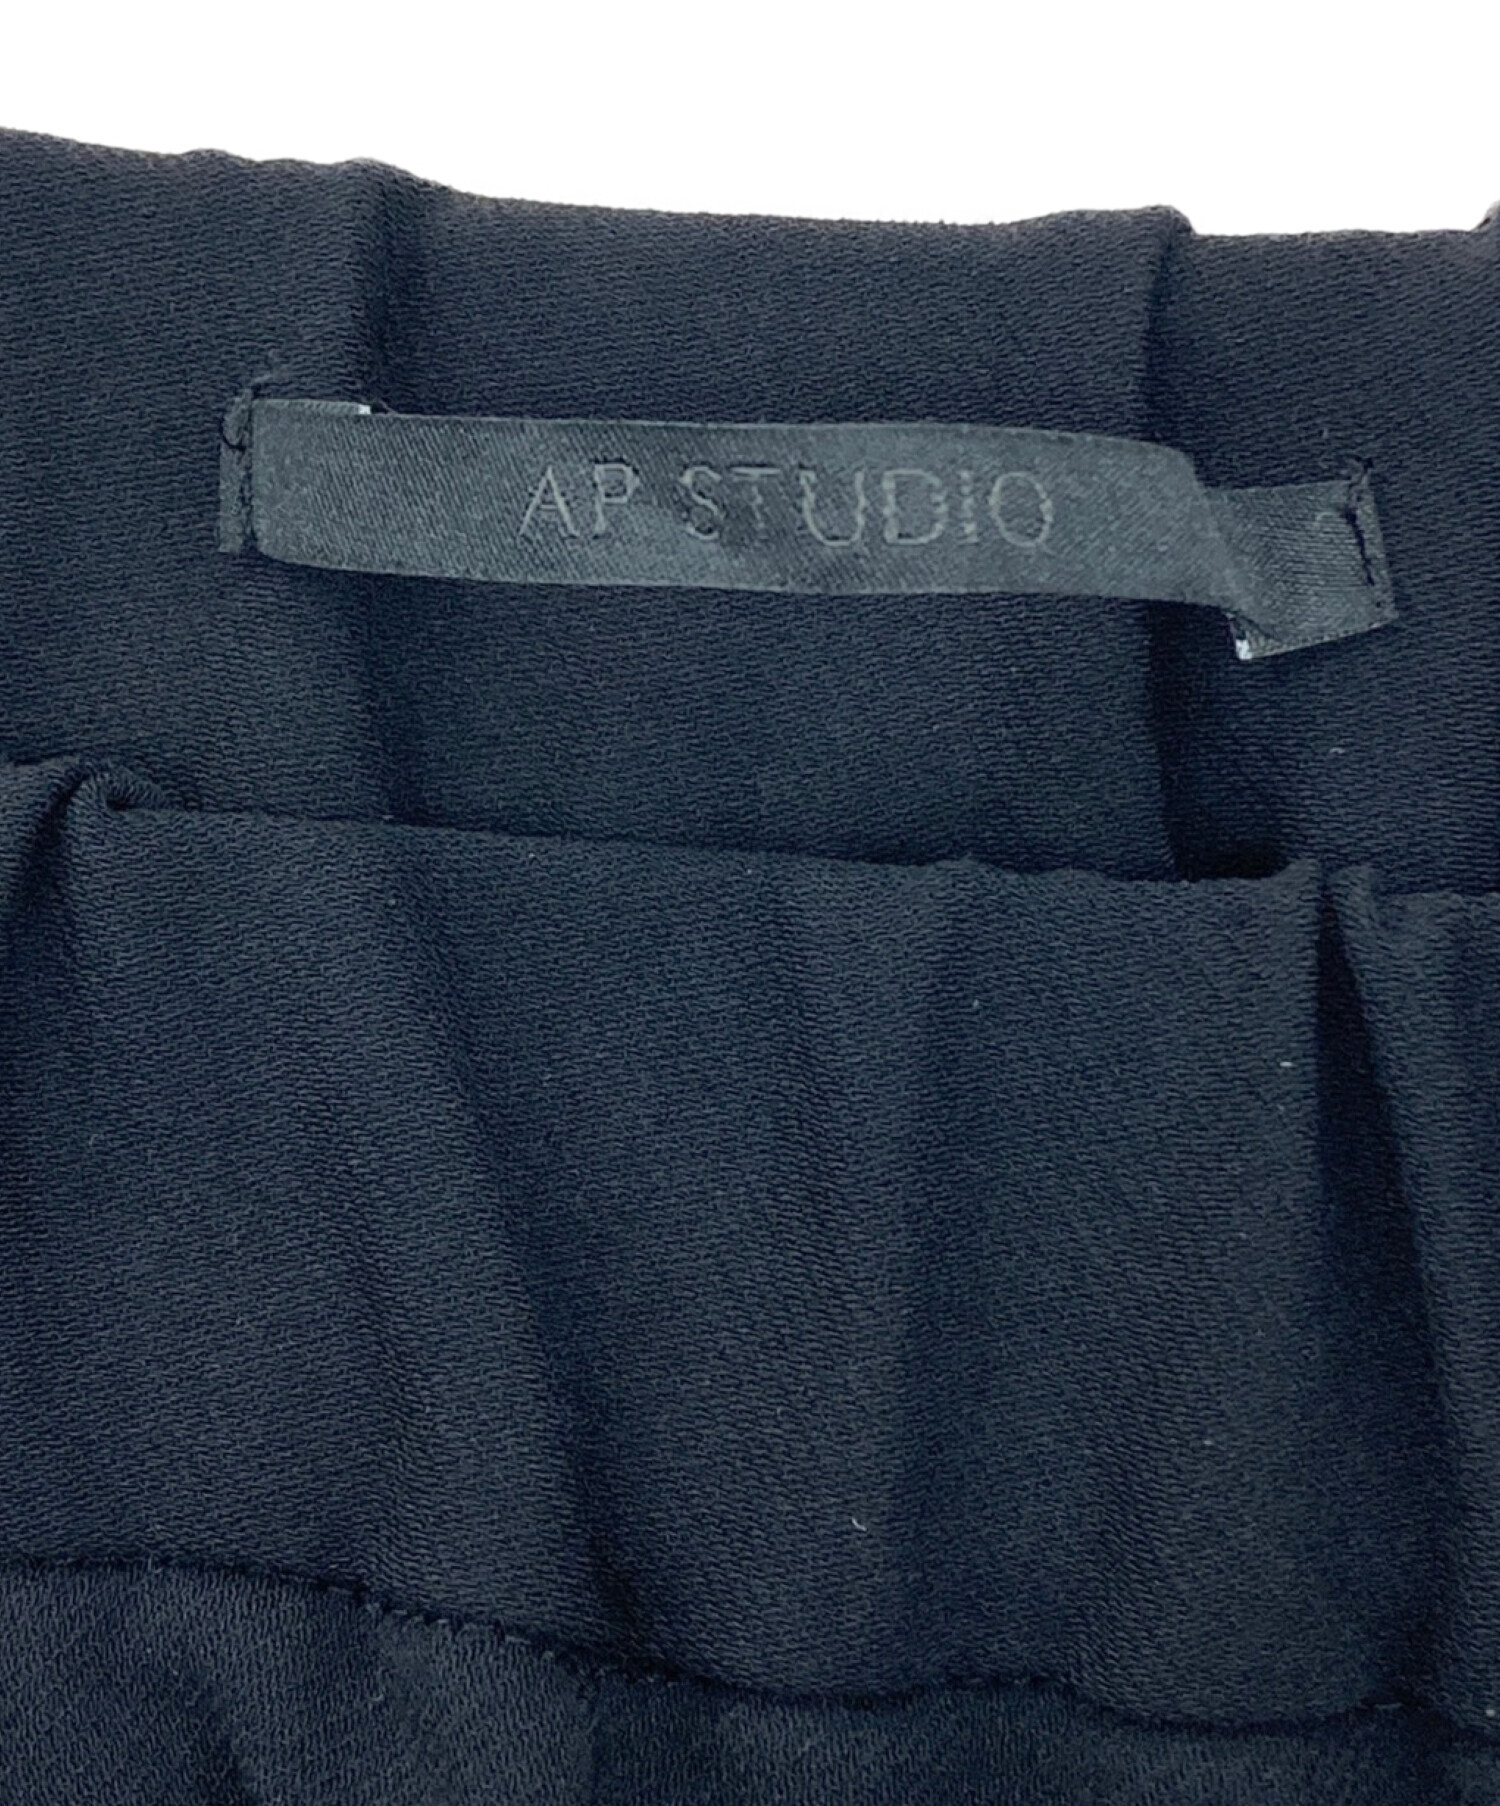 AP STUDIO (エーピーストゥディオ) スリットイージーテーパードパンツ ブラック サイズ:38